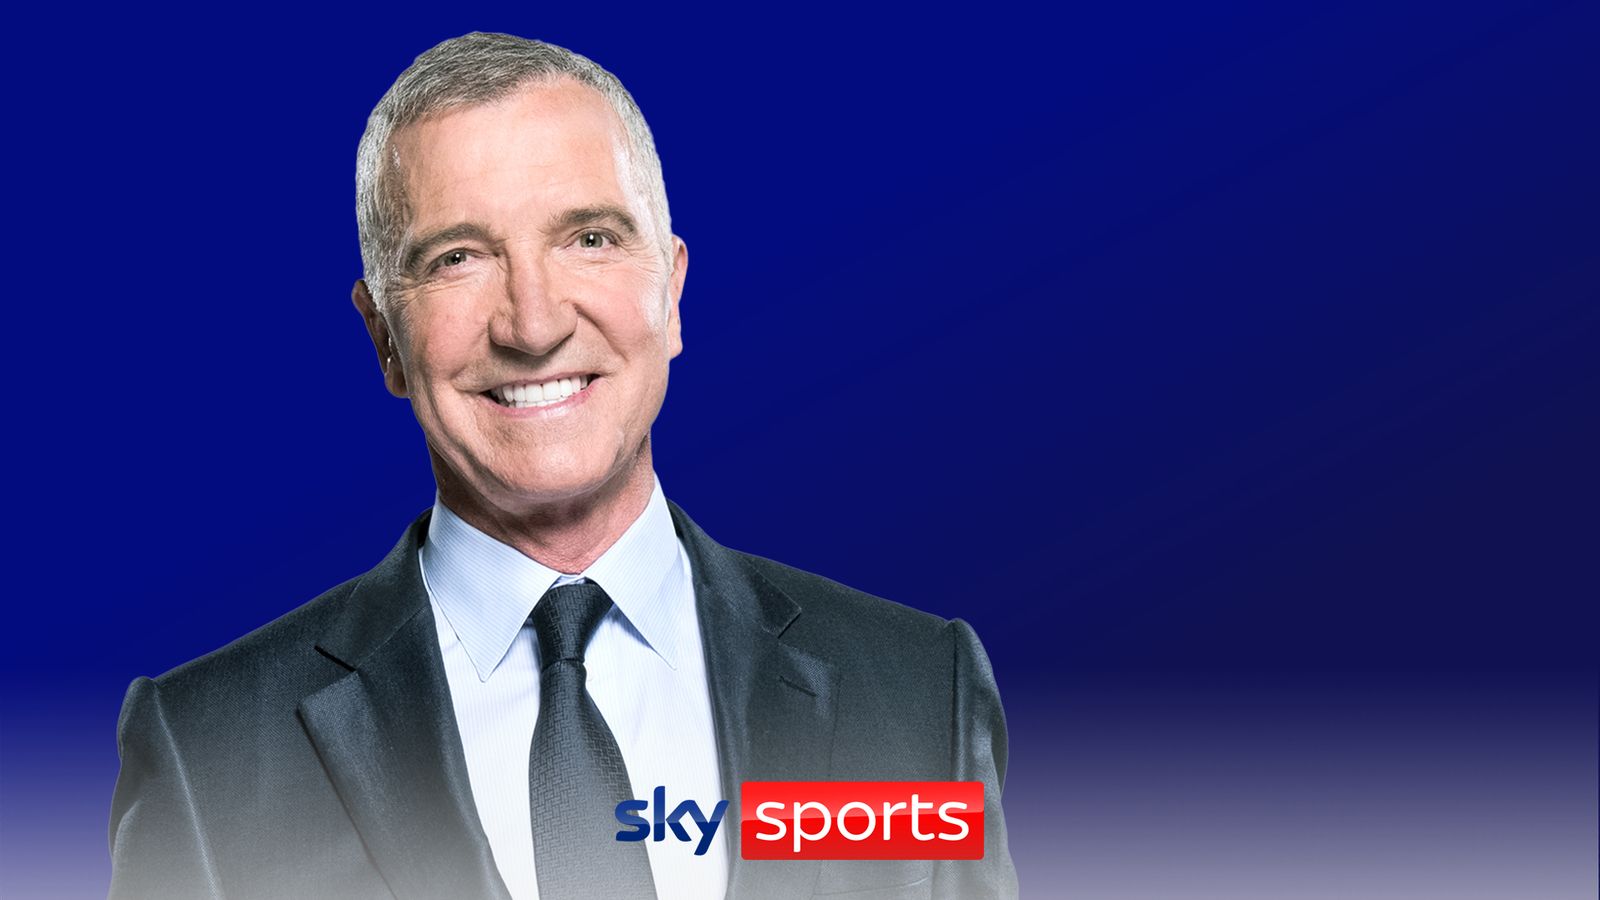 Грэм Сунесс покидает Sky Sports, проработав денежным аналитиком более десяти лет |  футбольные новости